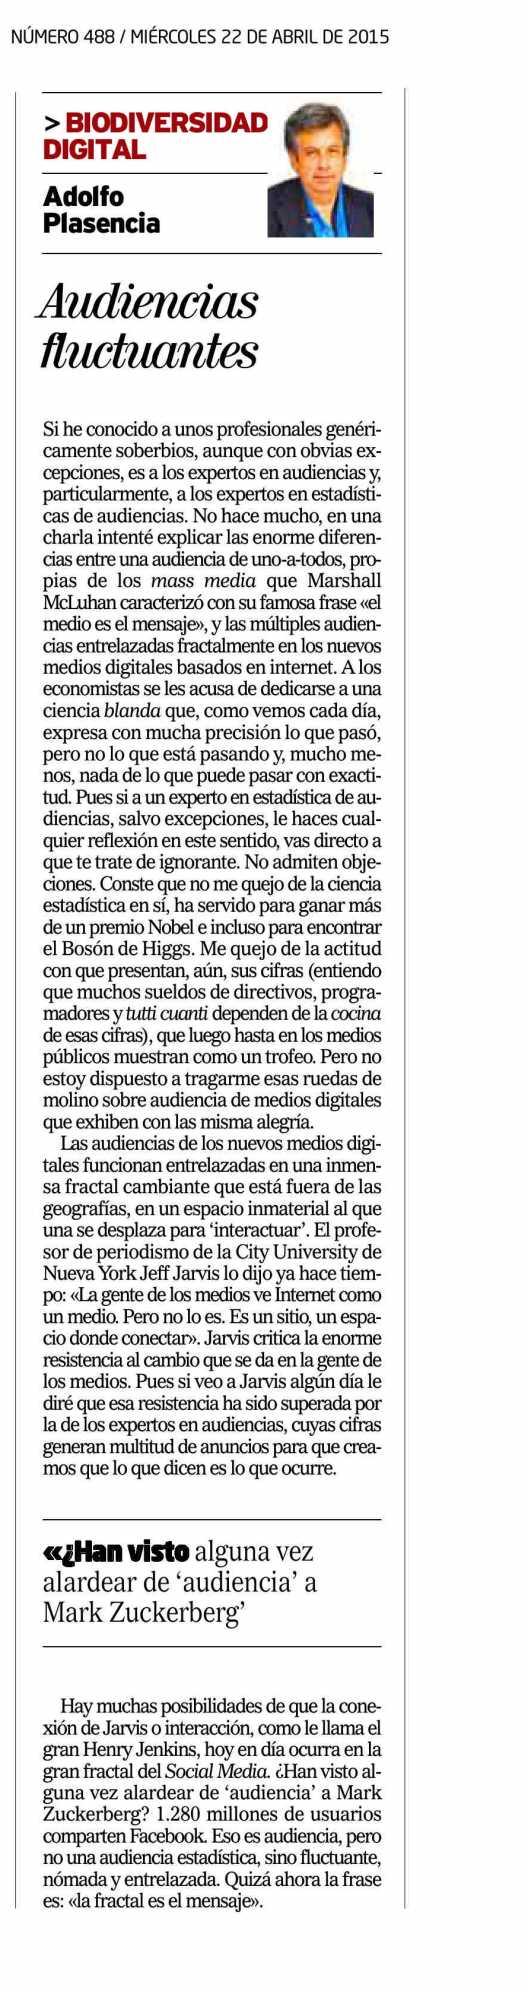 EL MUNDO (INNOVADORES) MADRID Prensa: Tirada: Difusión: Diaria 262.109 Ejemplares 176.715 Ejemplares Sección: OTROS Valor: 16.